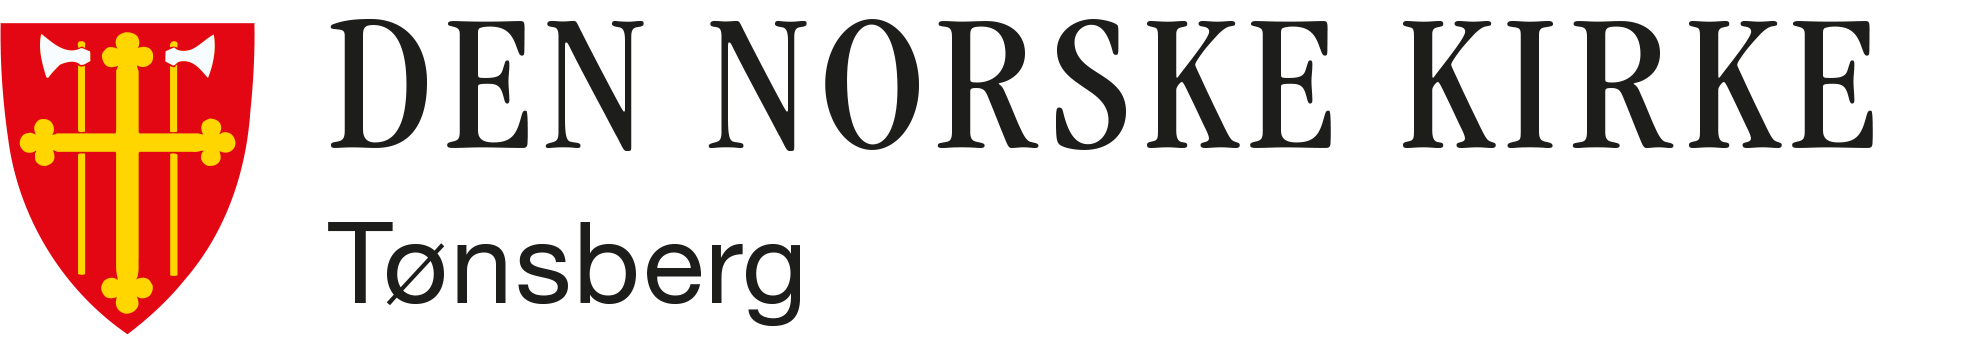 Tønsberg kirkelige fellesråd logo